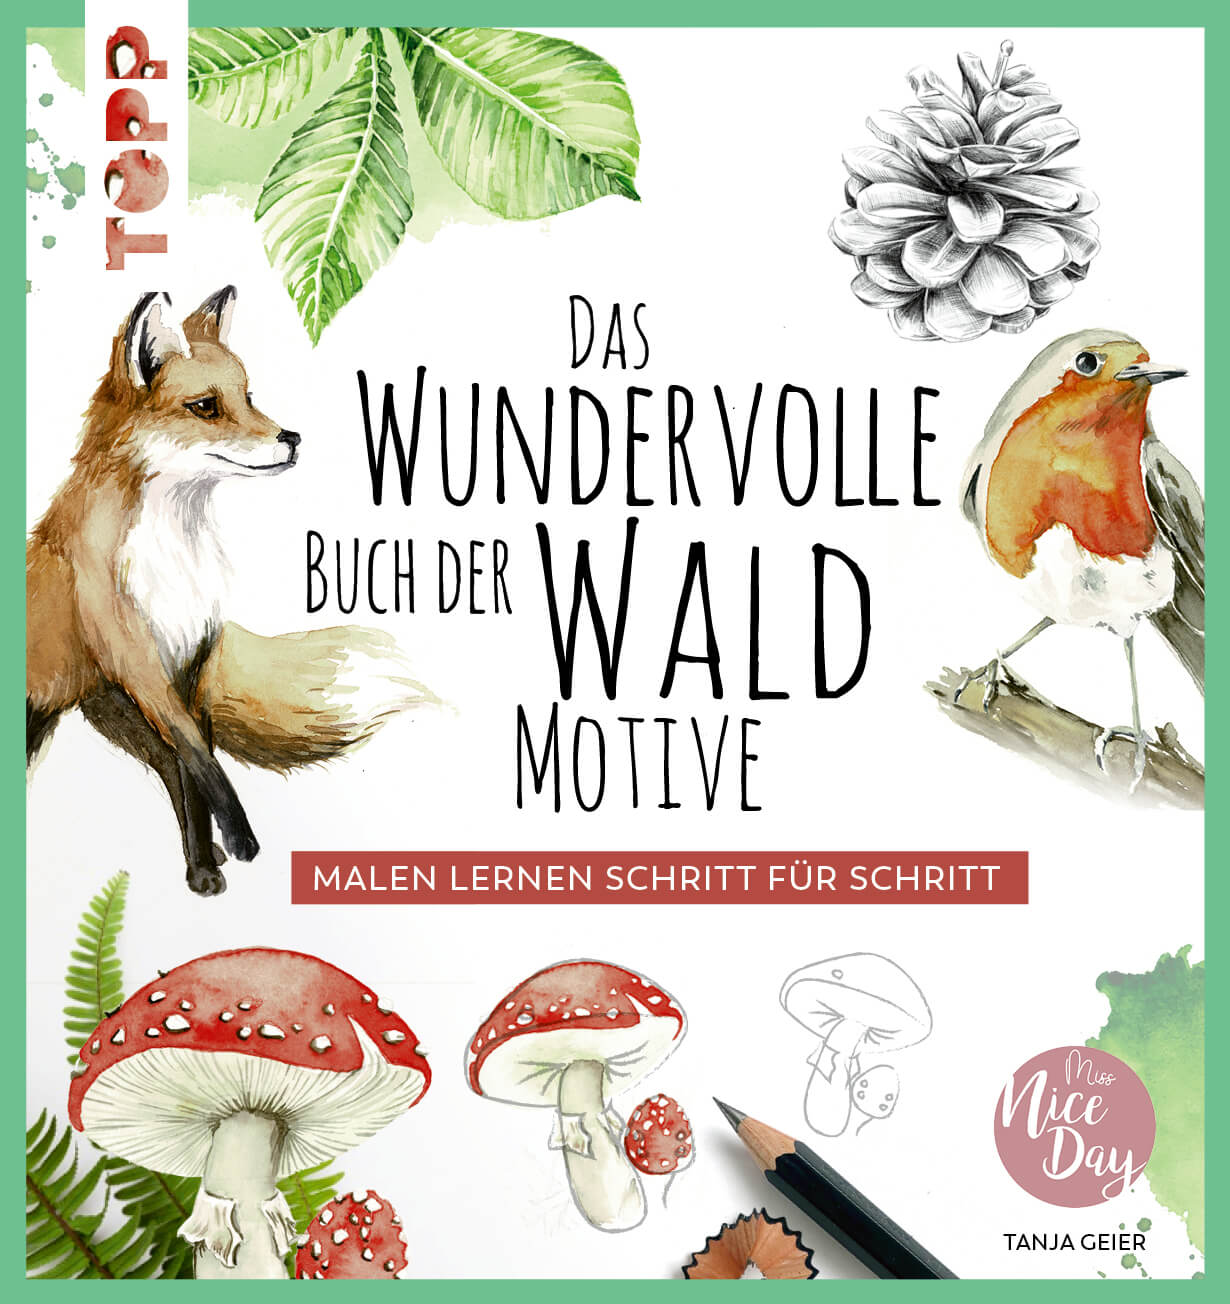 Das wundervolle Buch der Waldmotive - Zeichnen mit Bleistift und Aquarellfarben